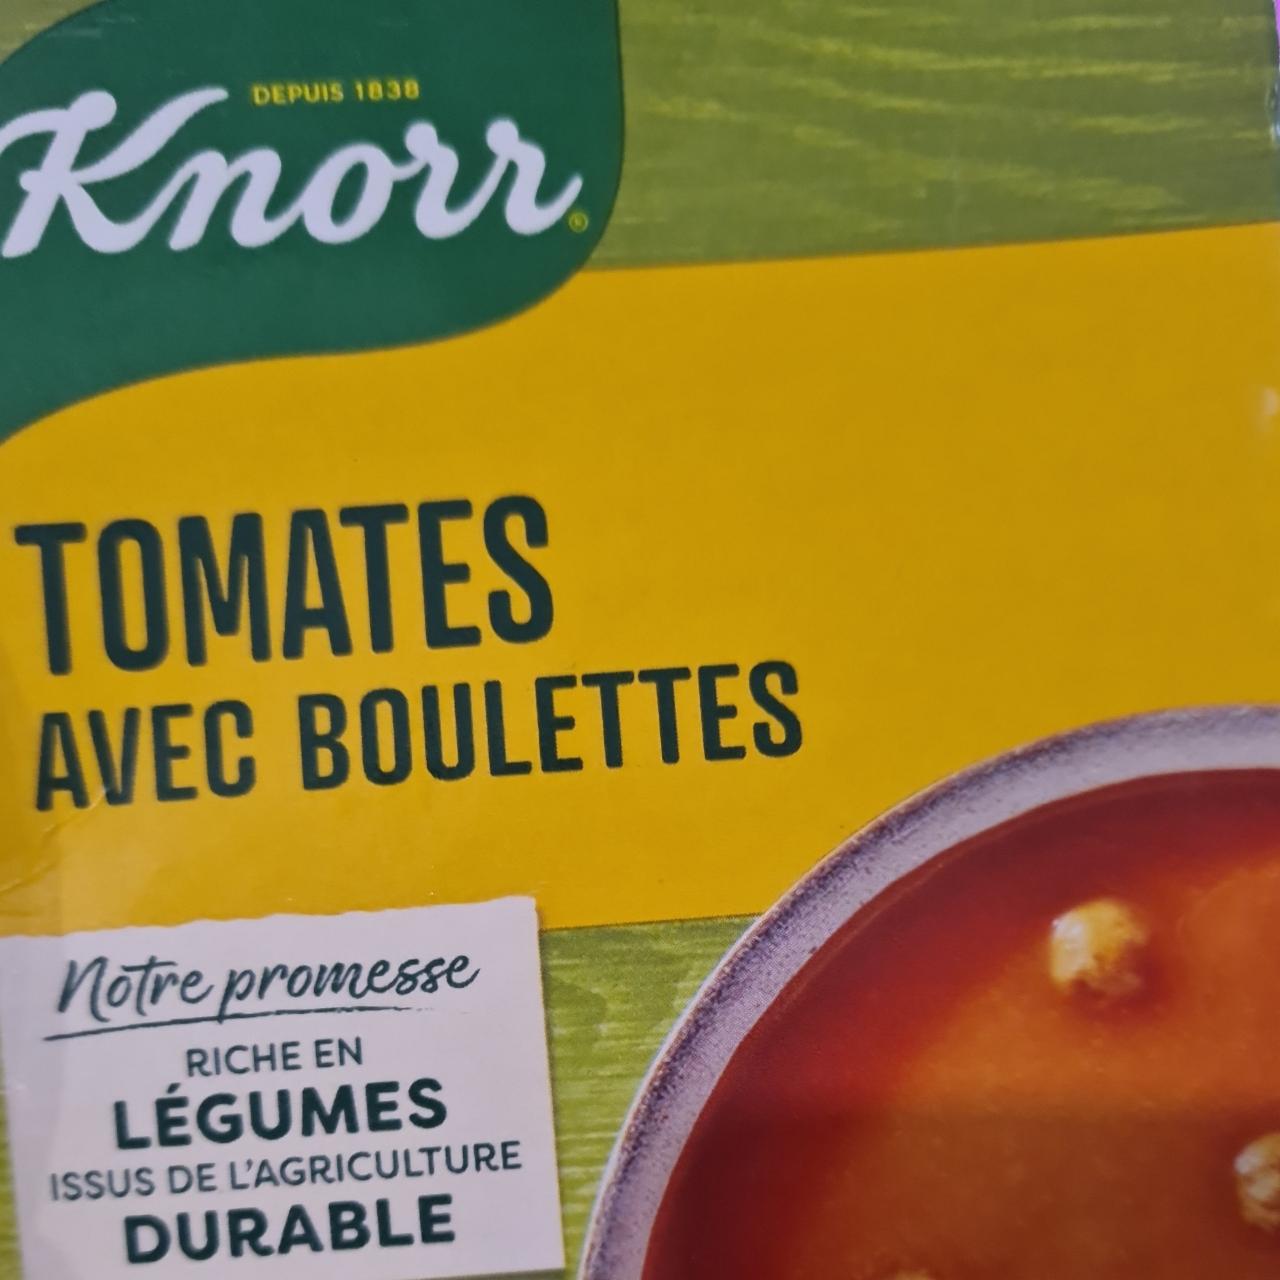 Fotografie - Tomates avec boulettes Knorr